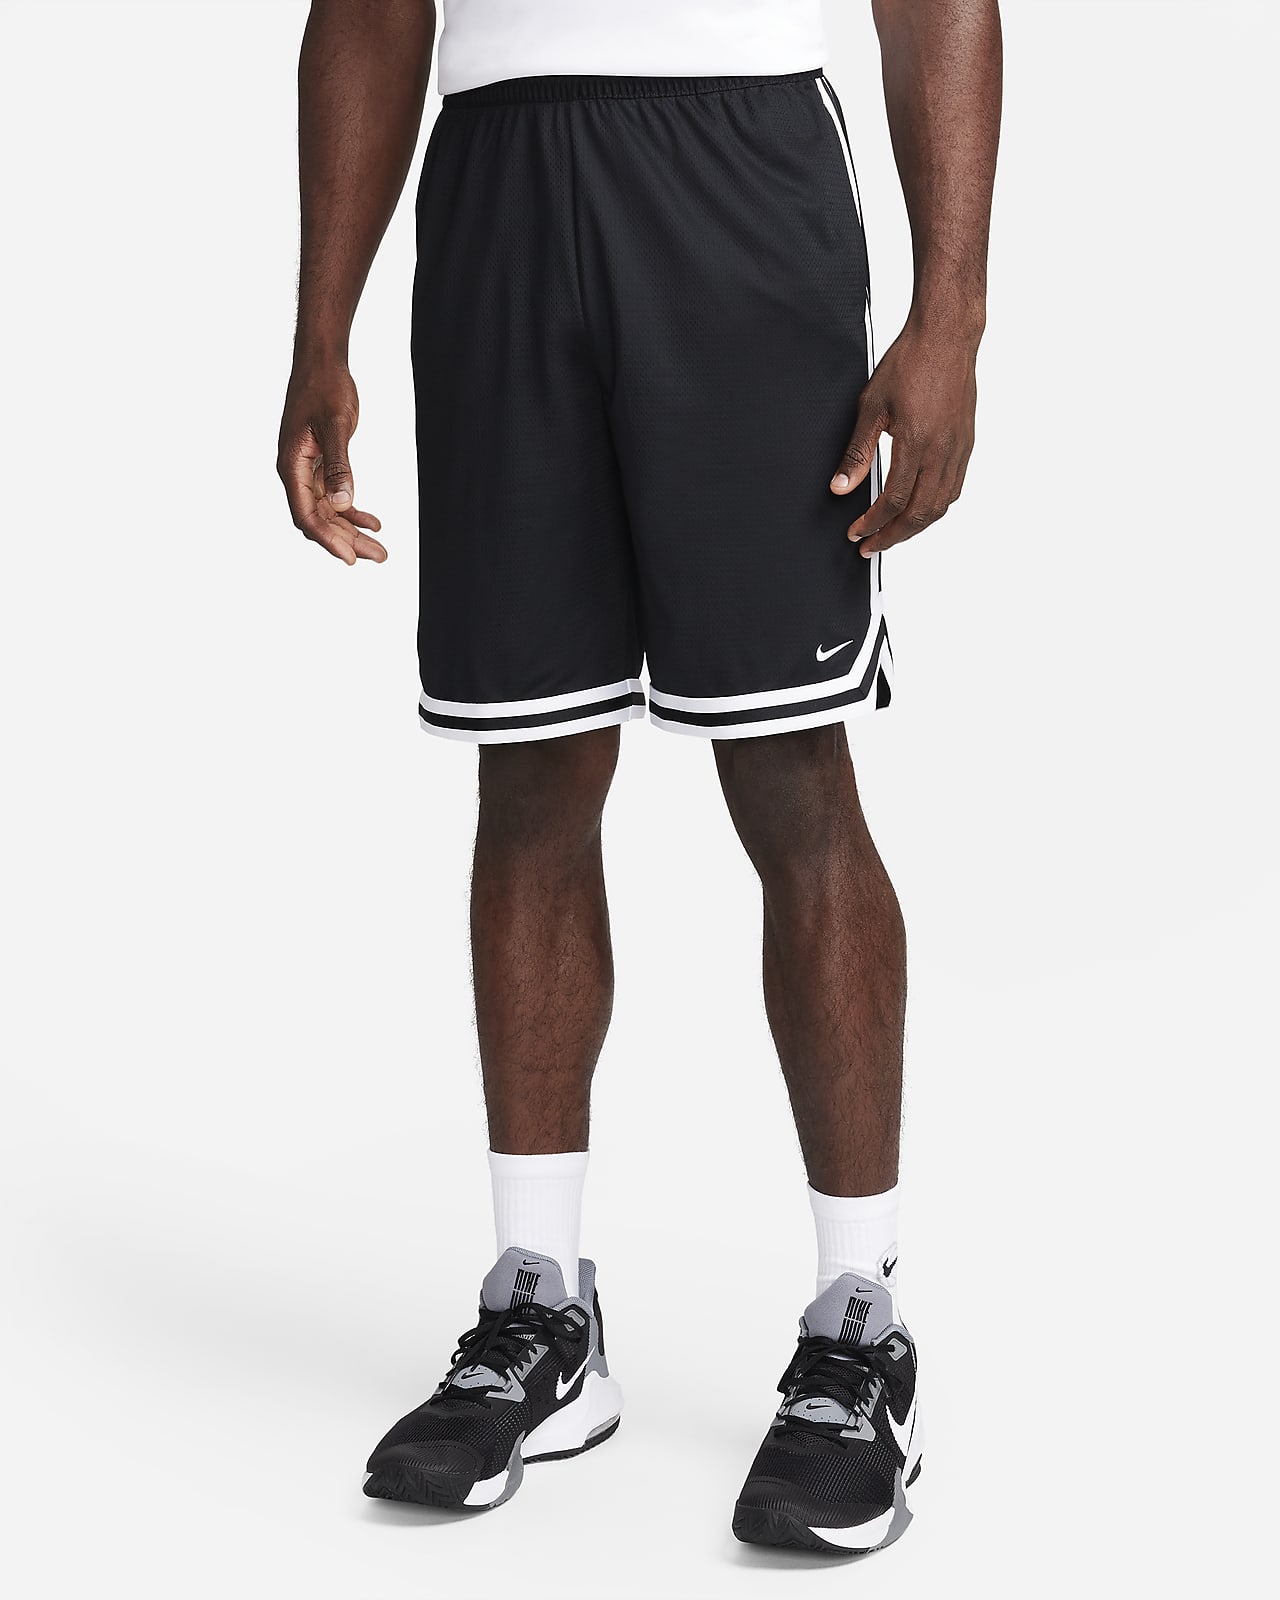 Shorts de básquetbol de 26 cm Dri-FIT para hombre Nike DNA